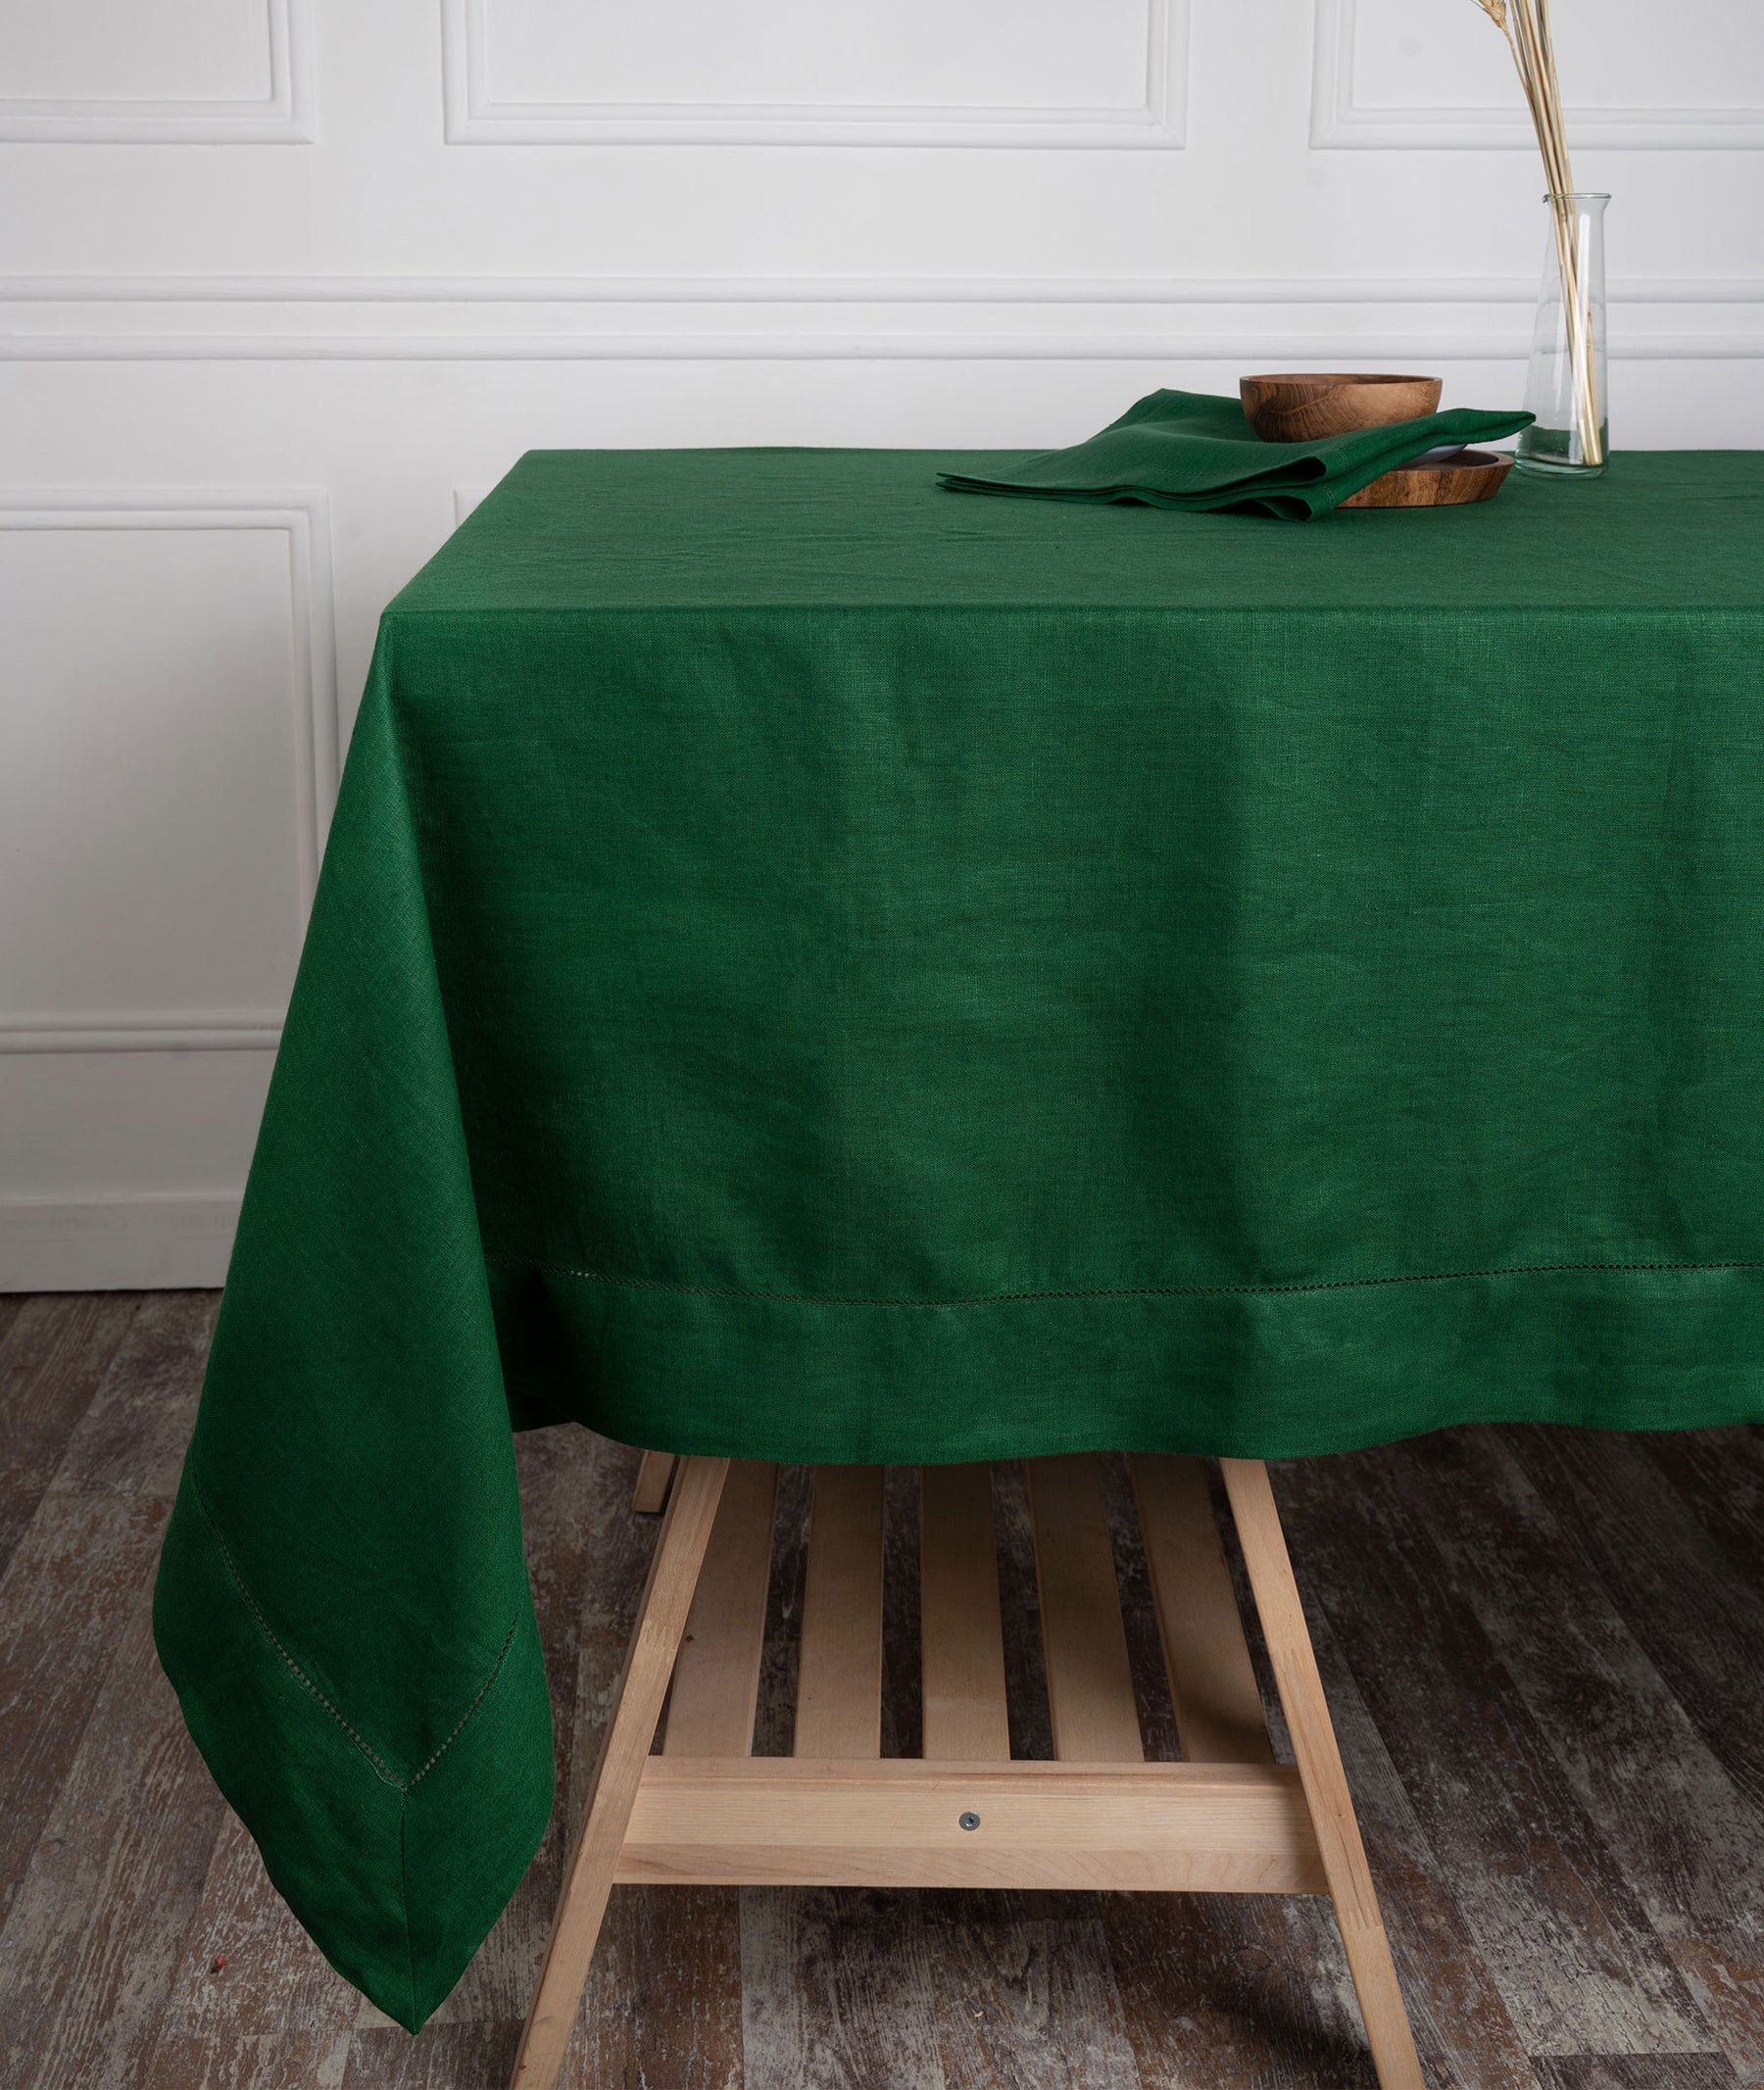 Eden Green Linen Tablecloth - Hemstitch